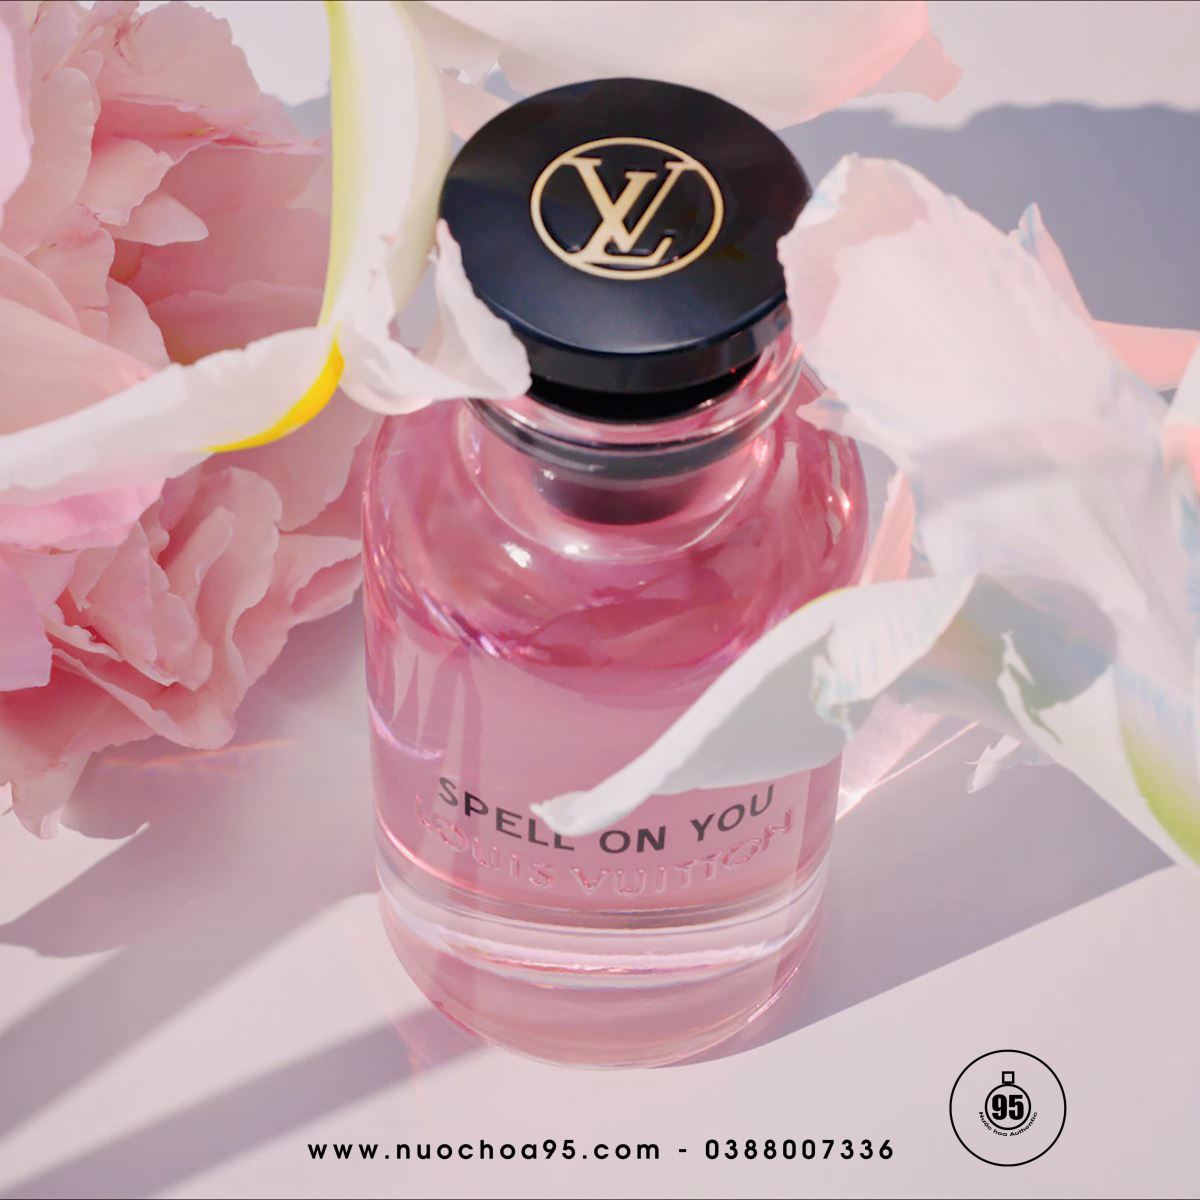 Nước hoa Louis Vuitton Spell On You - Ảnh 2